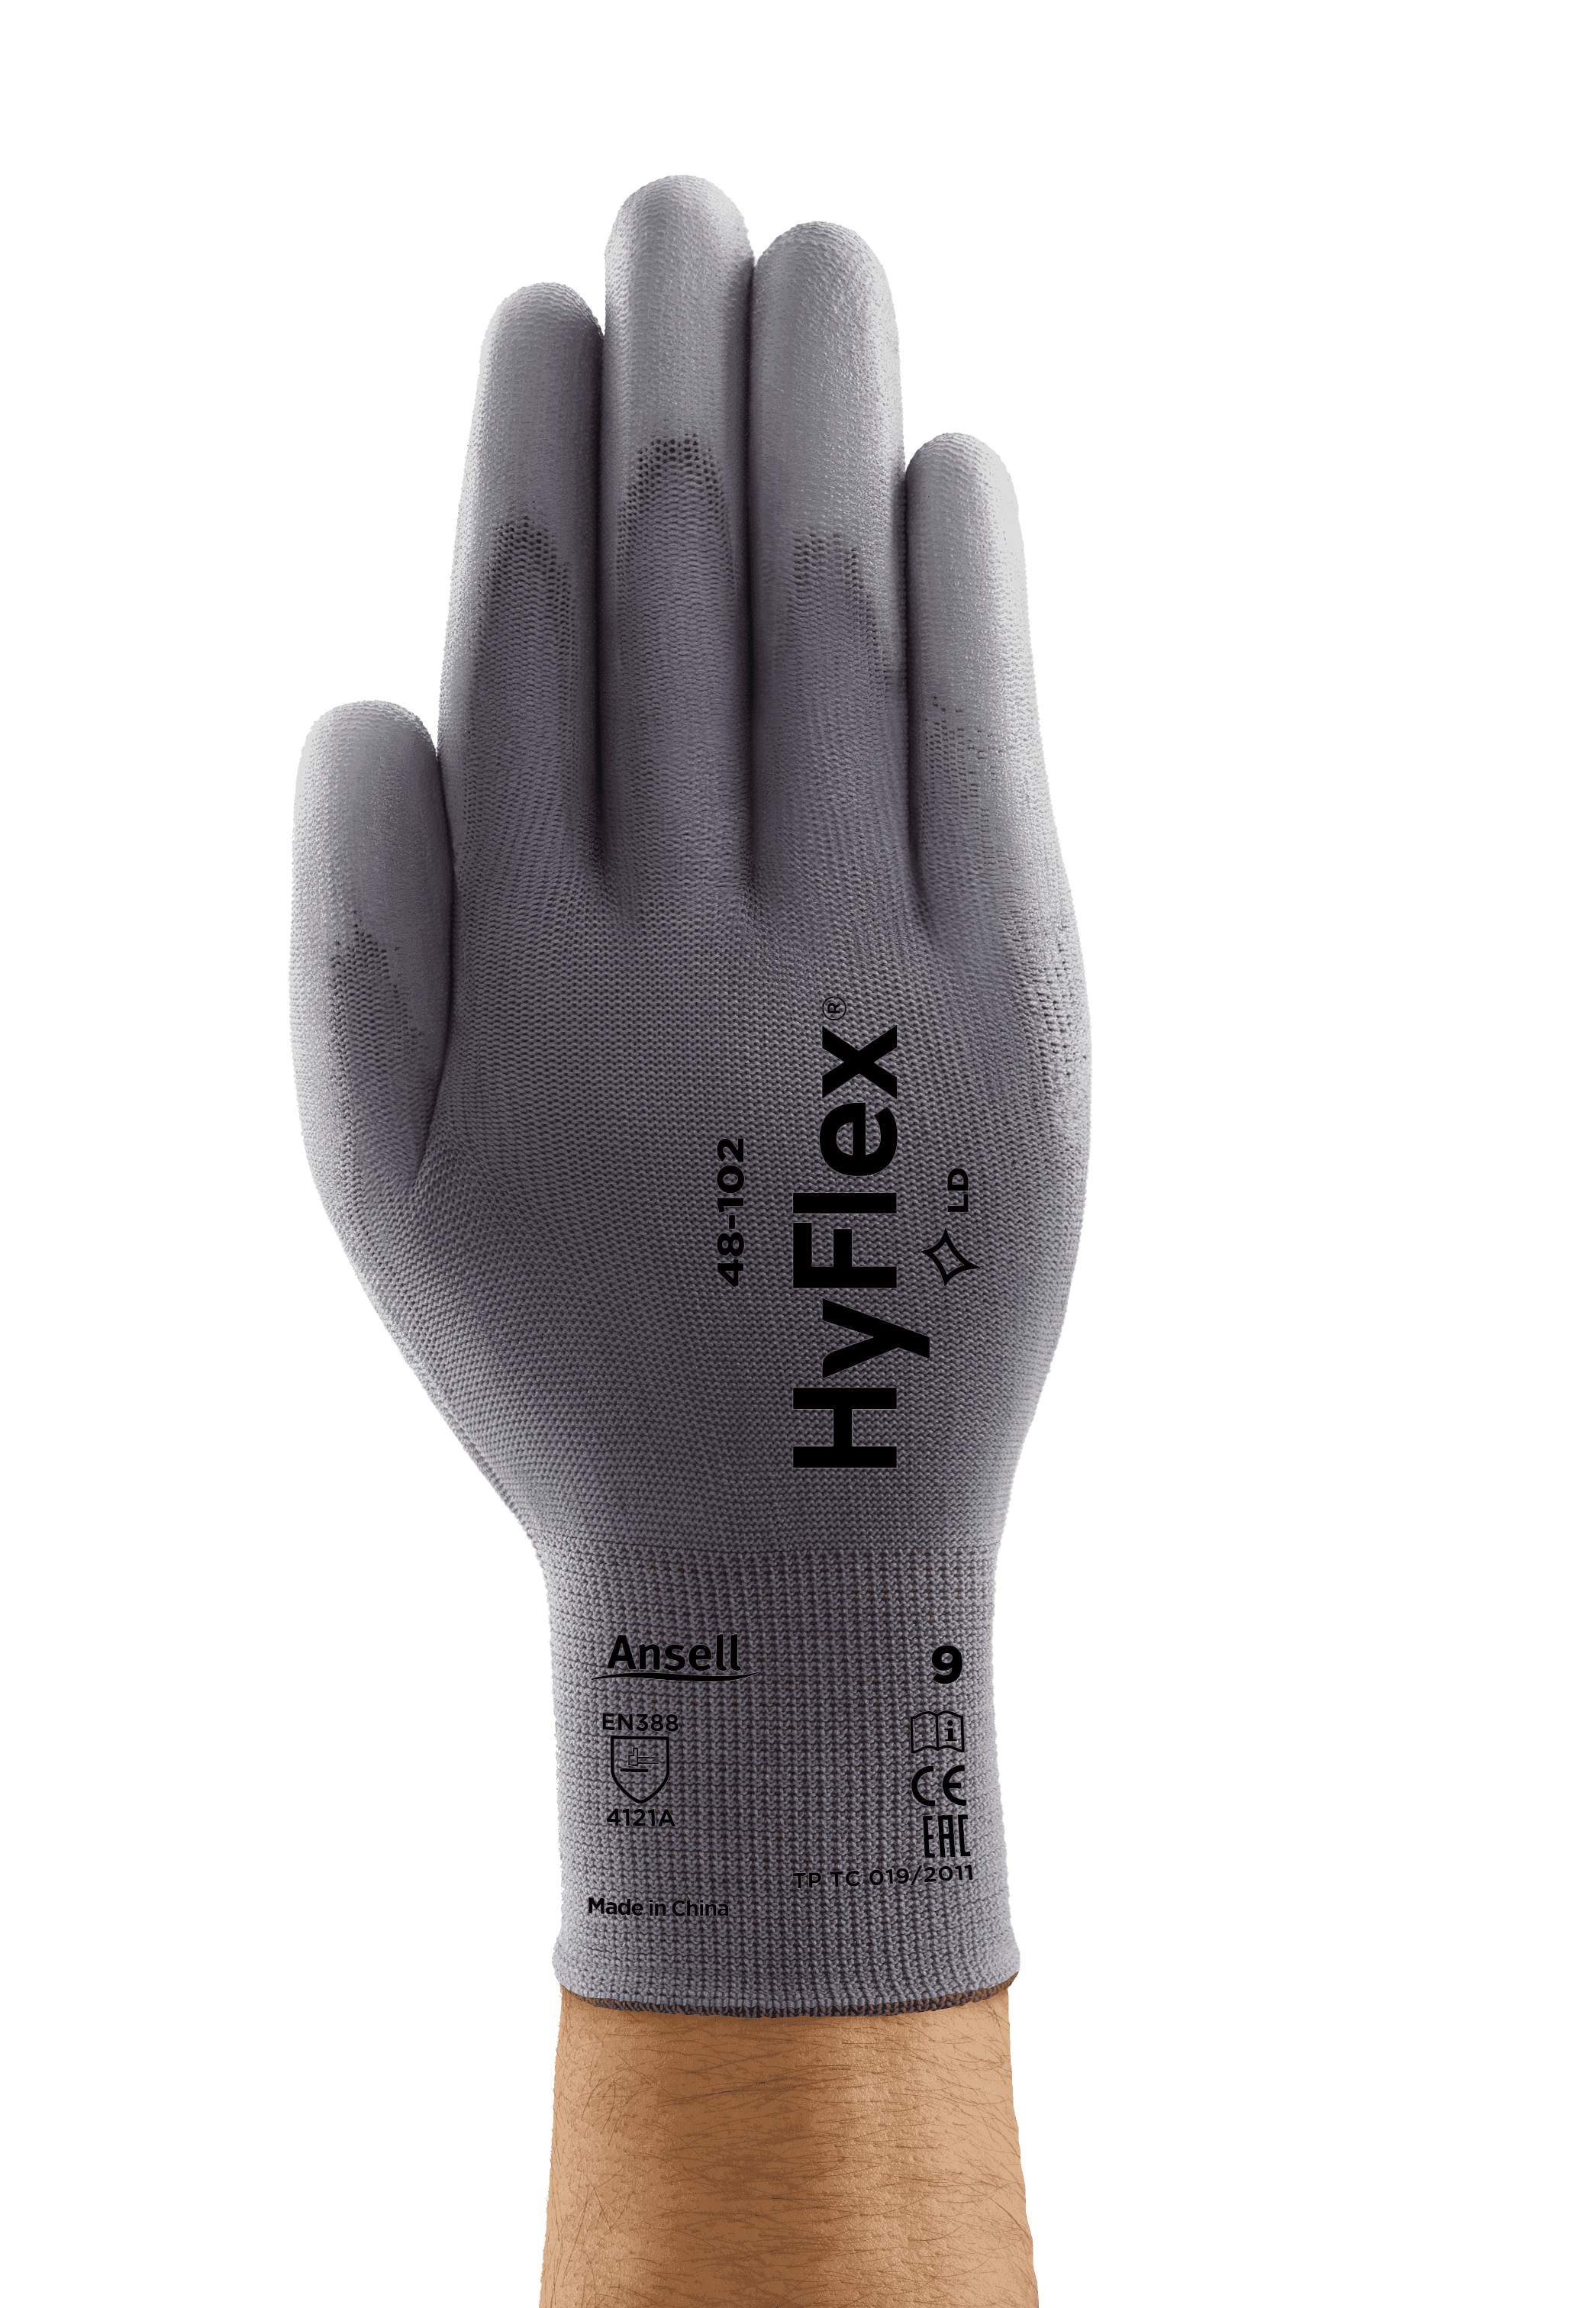 HyFlex 48-102 Safety Gloves - 12 Pairs